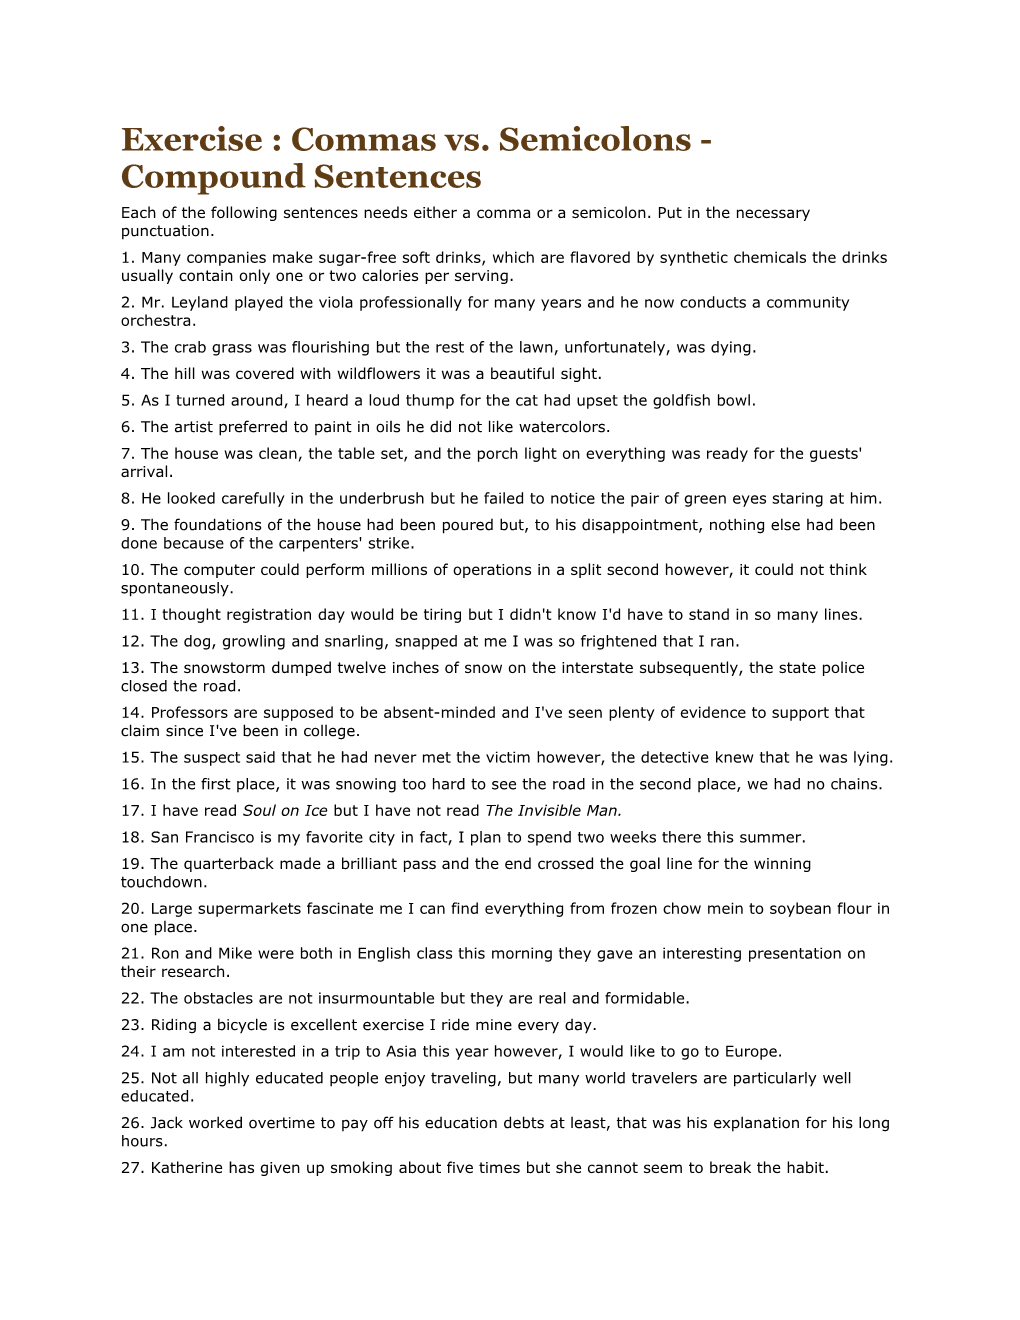 Exercise : Commas Vs. Semicolons - Compound Sentences